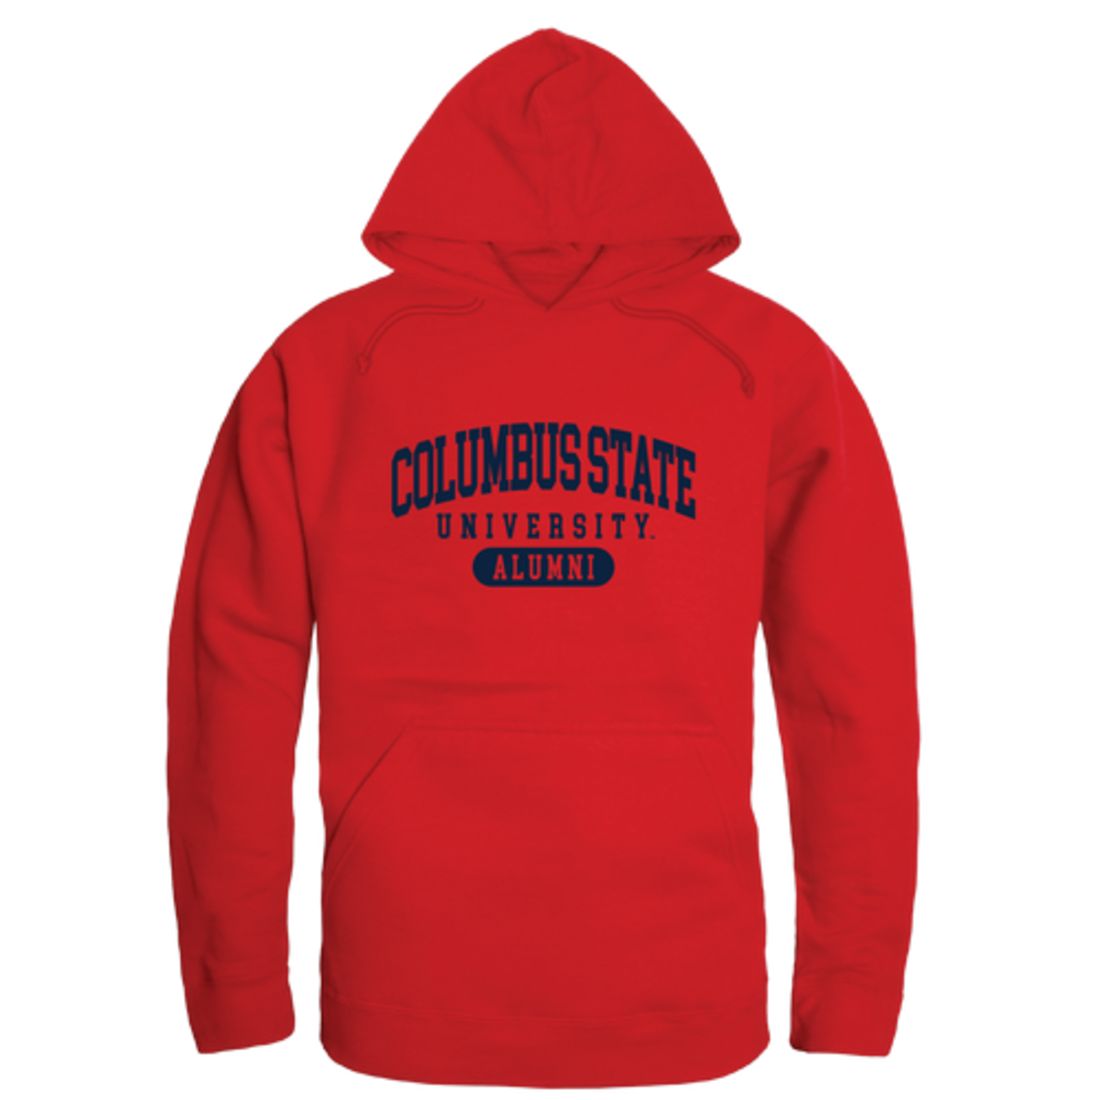 Columbus State University Cougars Alumni Fleece Hoodie Sweatshirts